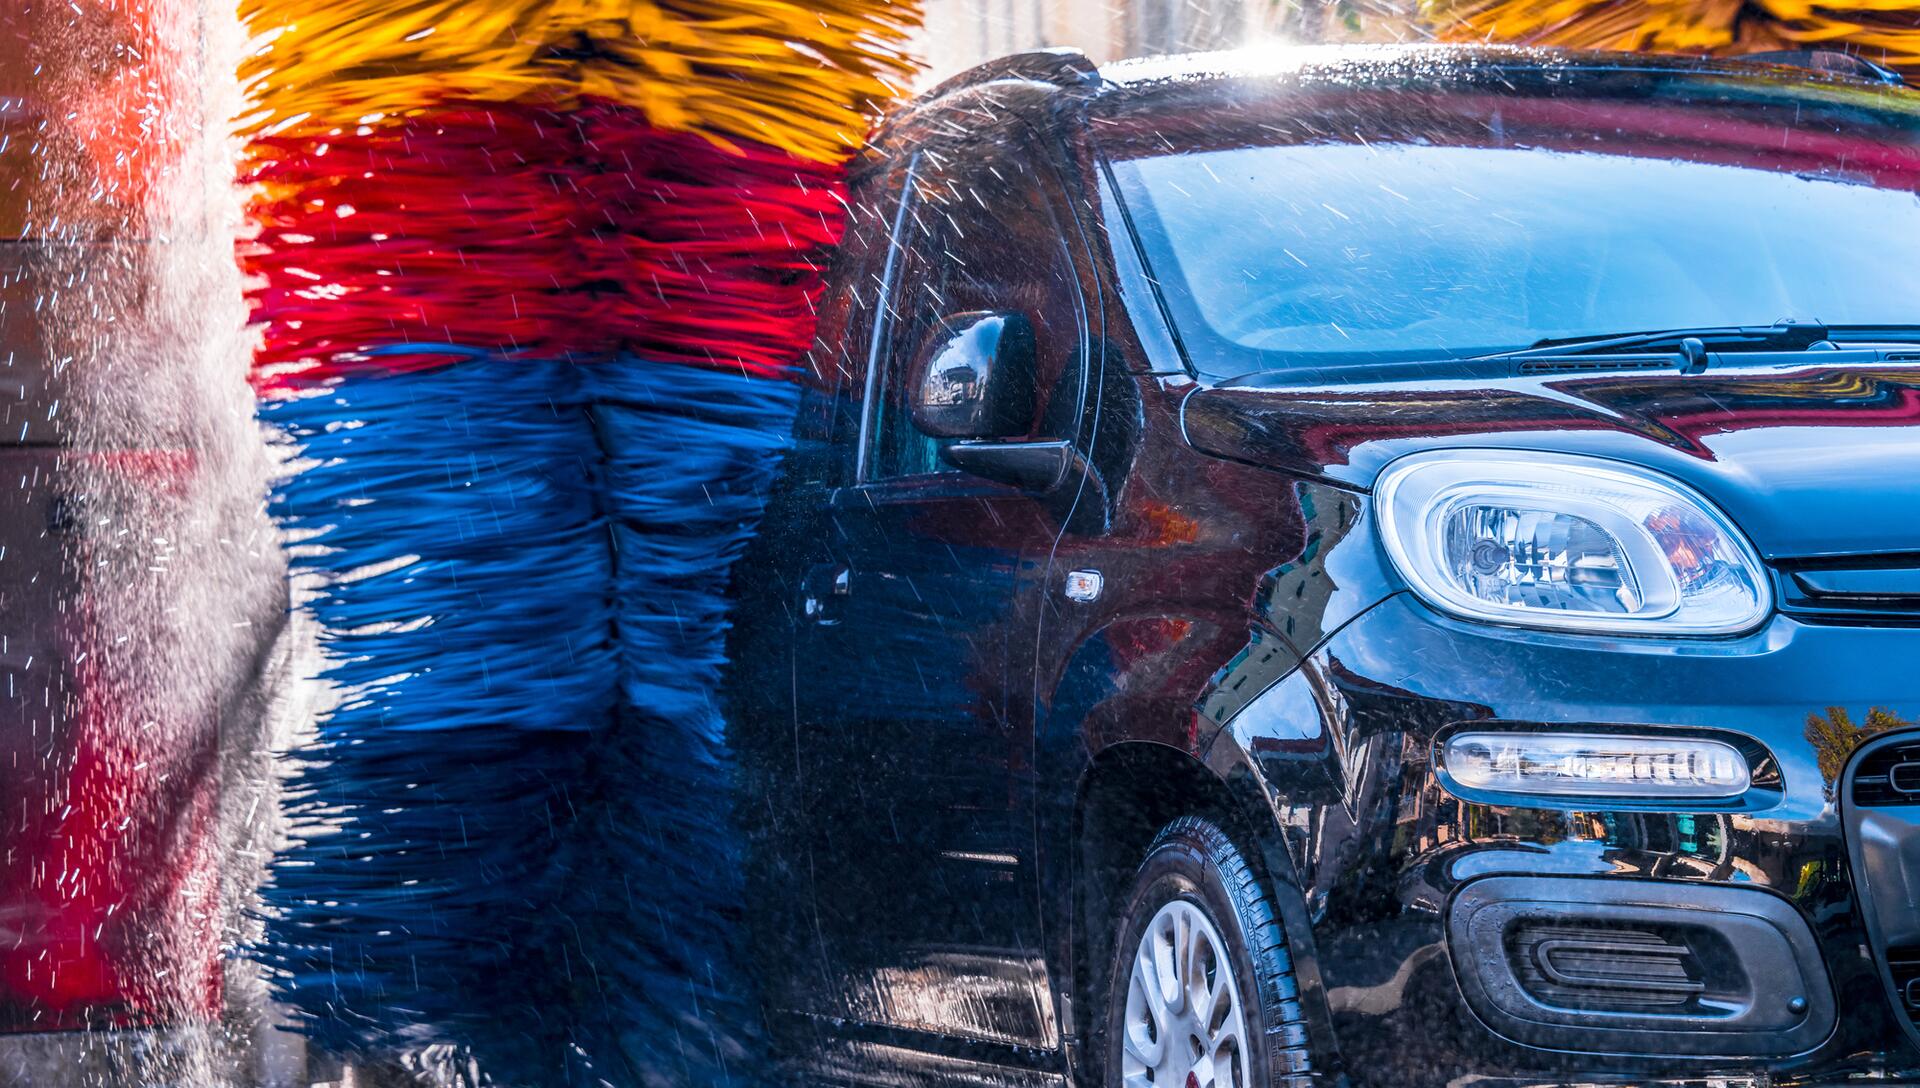 Poškození auta v myčce není vzácné. Co dělat, aby k němu nedošlo?